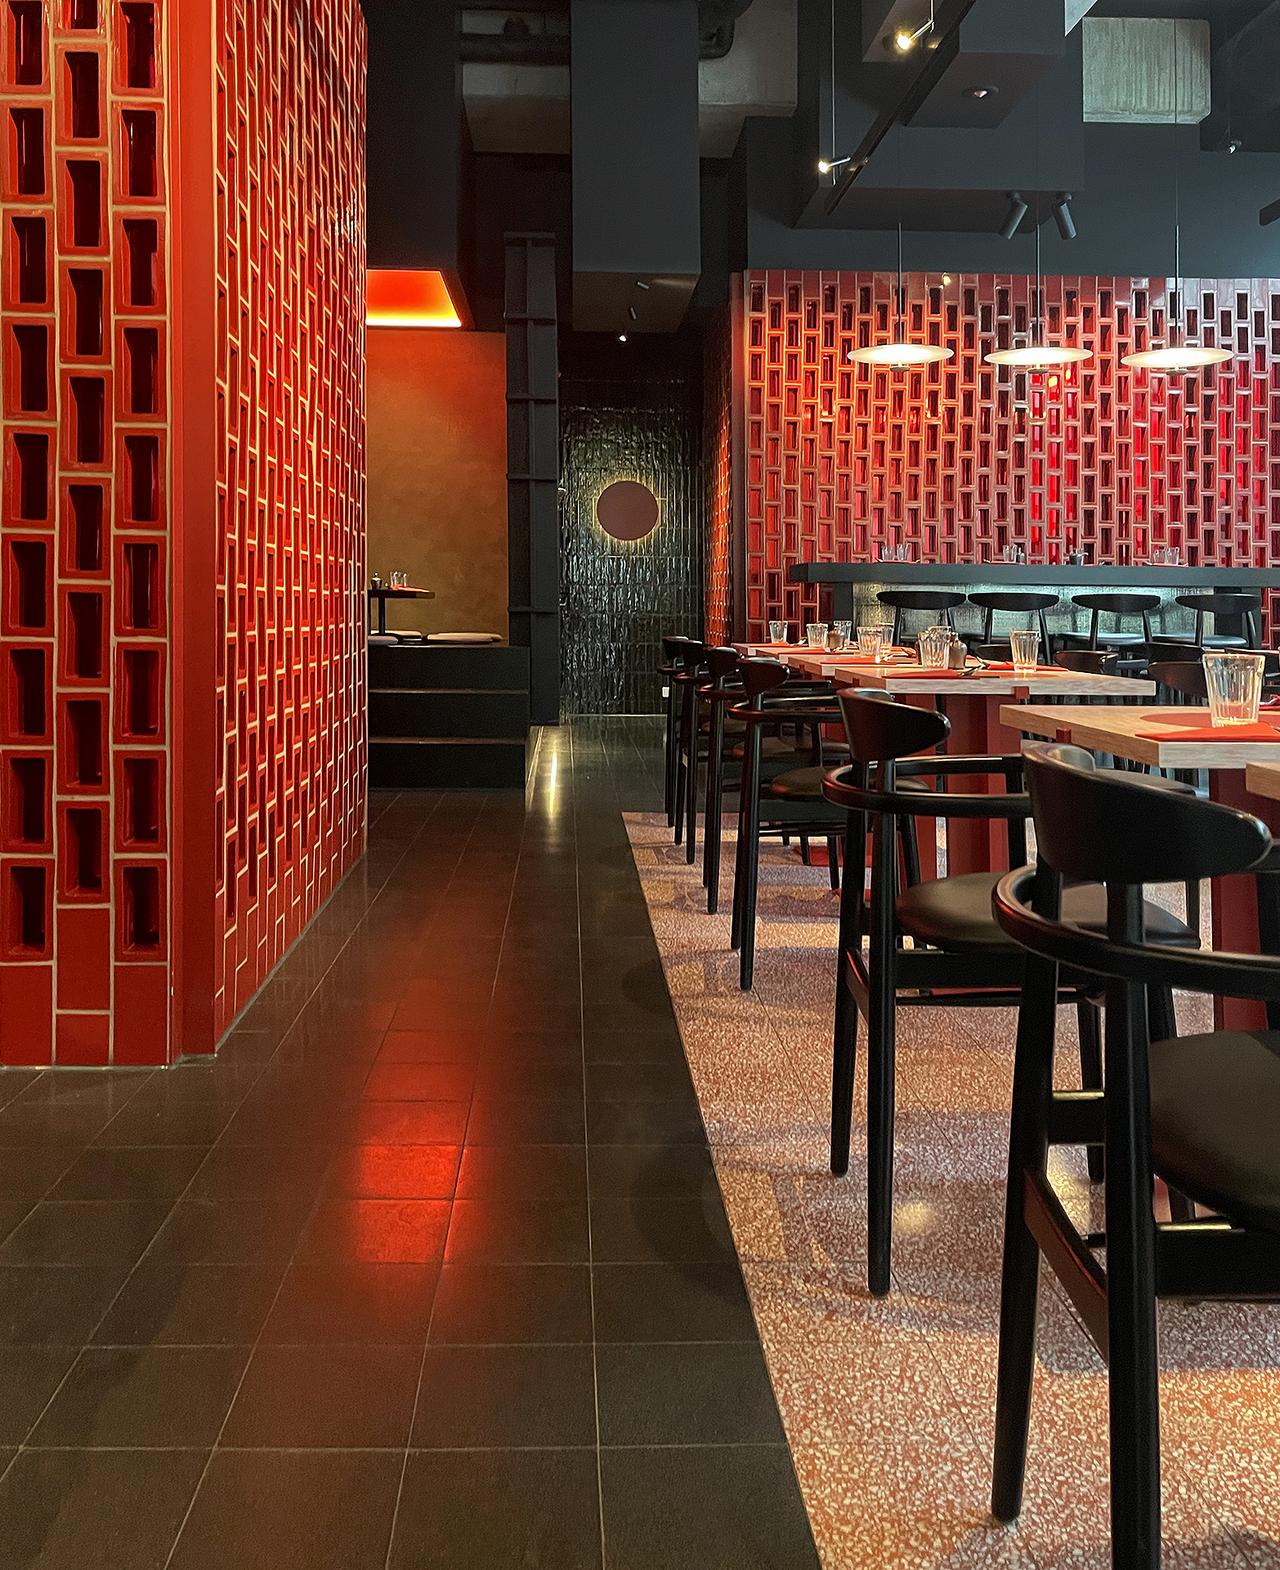 Schwarze und rote Terrazzoplatten von VIA in japanischem Restaurant